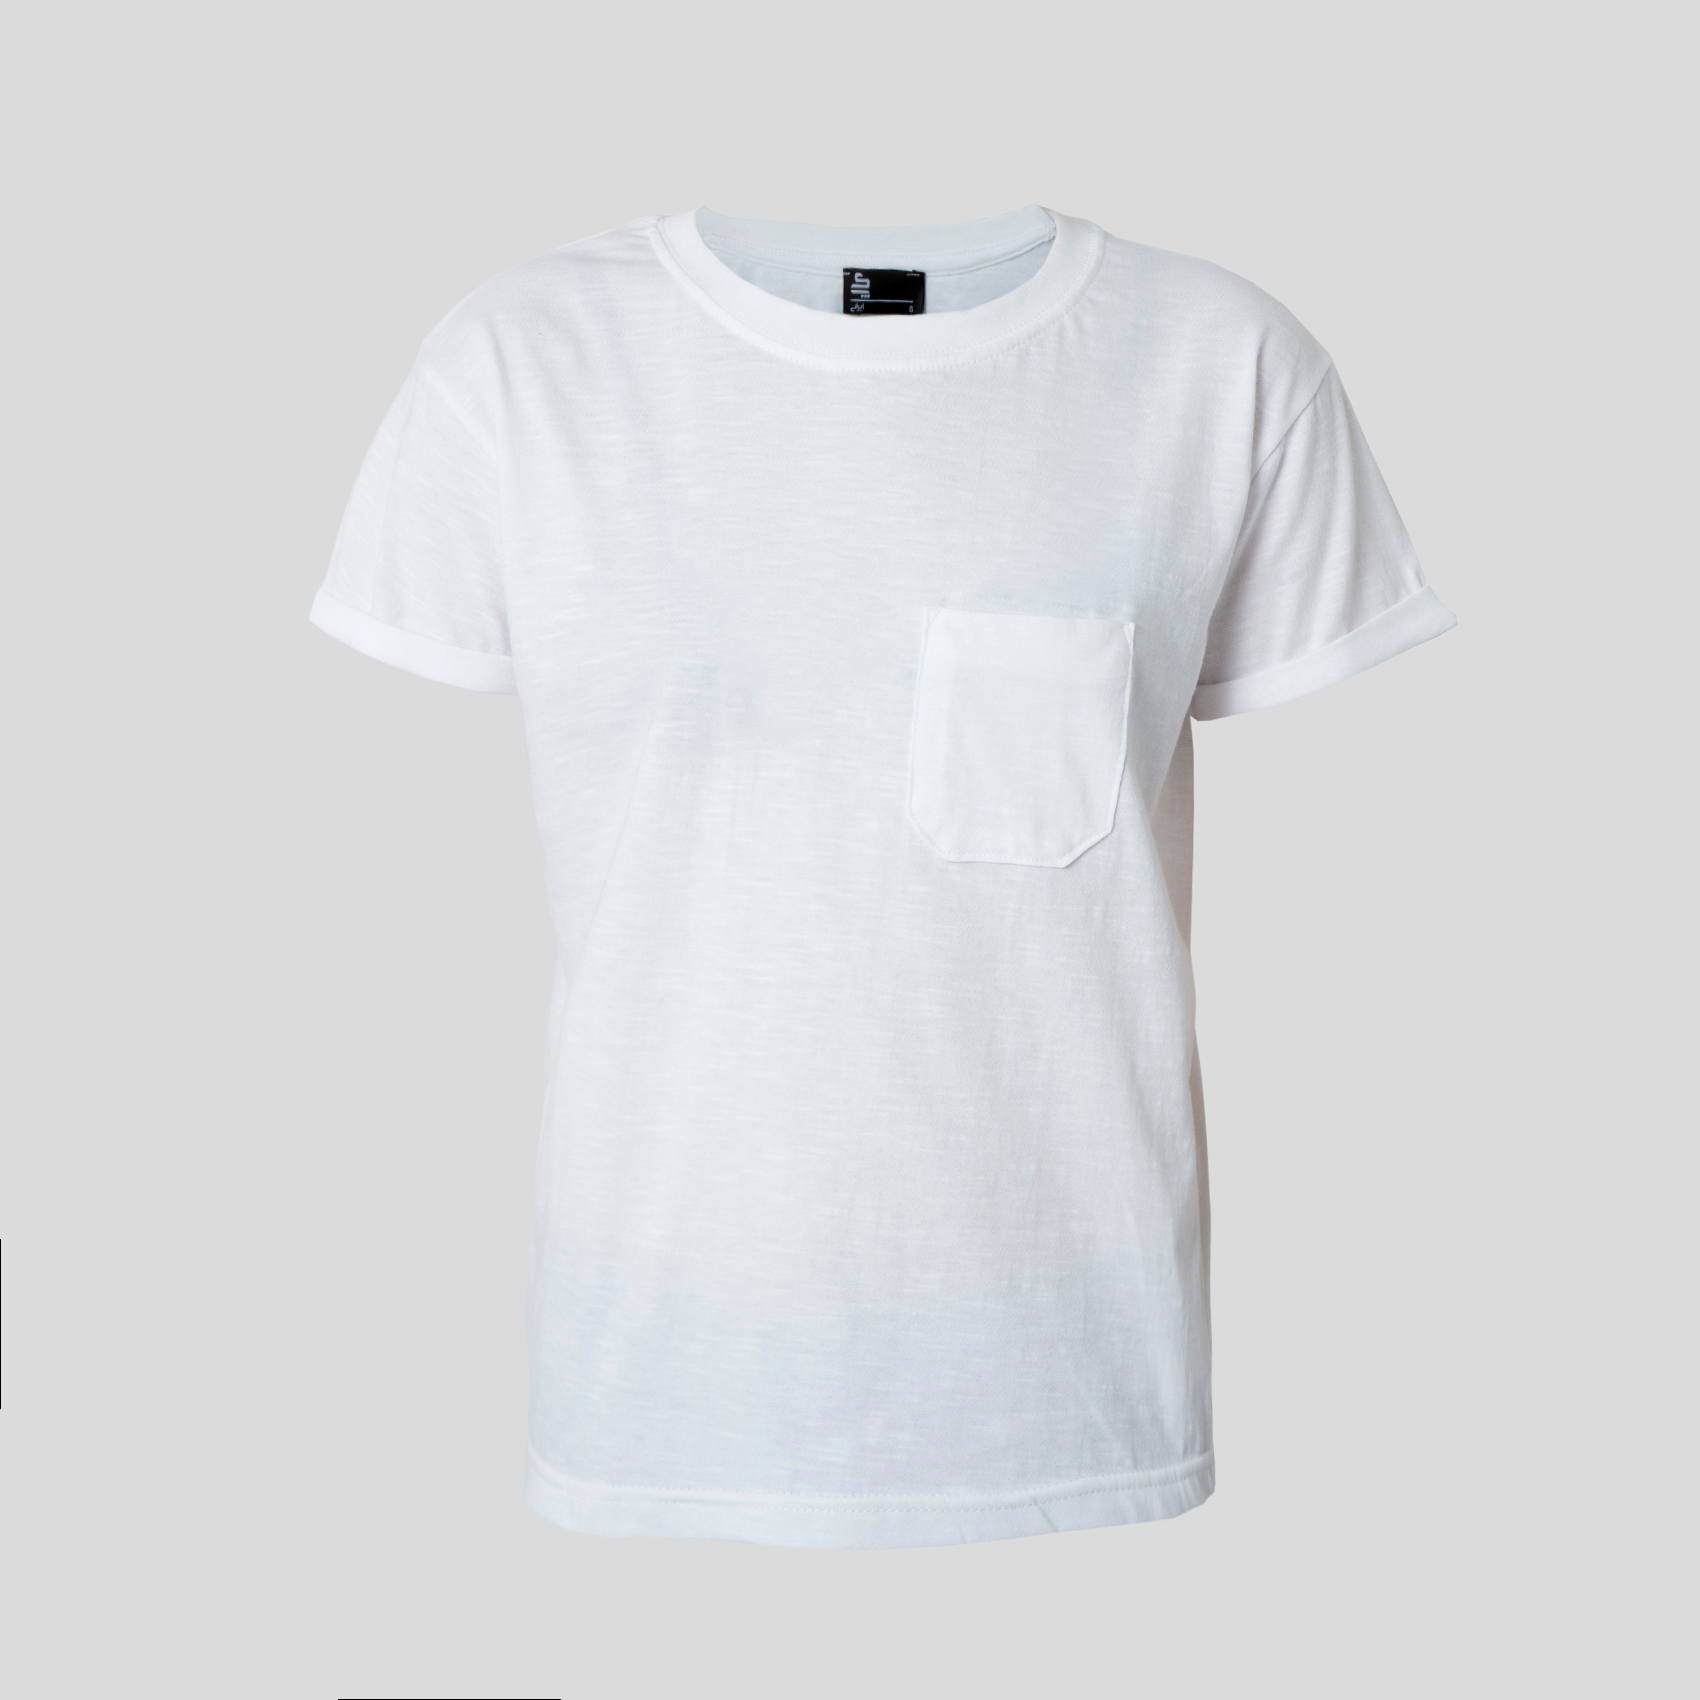 فروشگاه \u202bاینترنتی\u202c \u202bآستین| White T-shirt\u202c